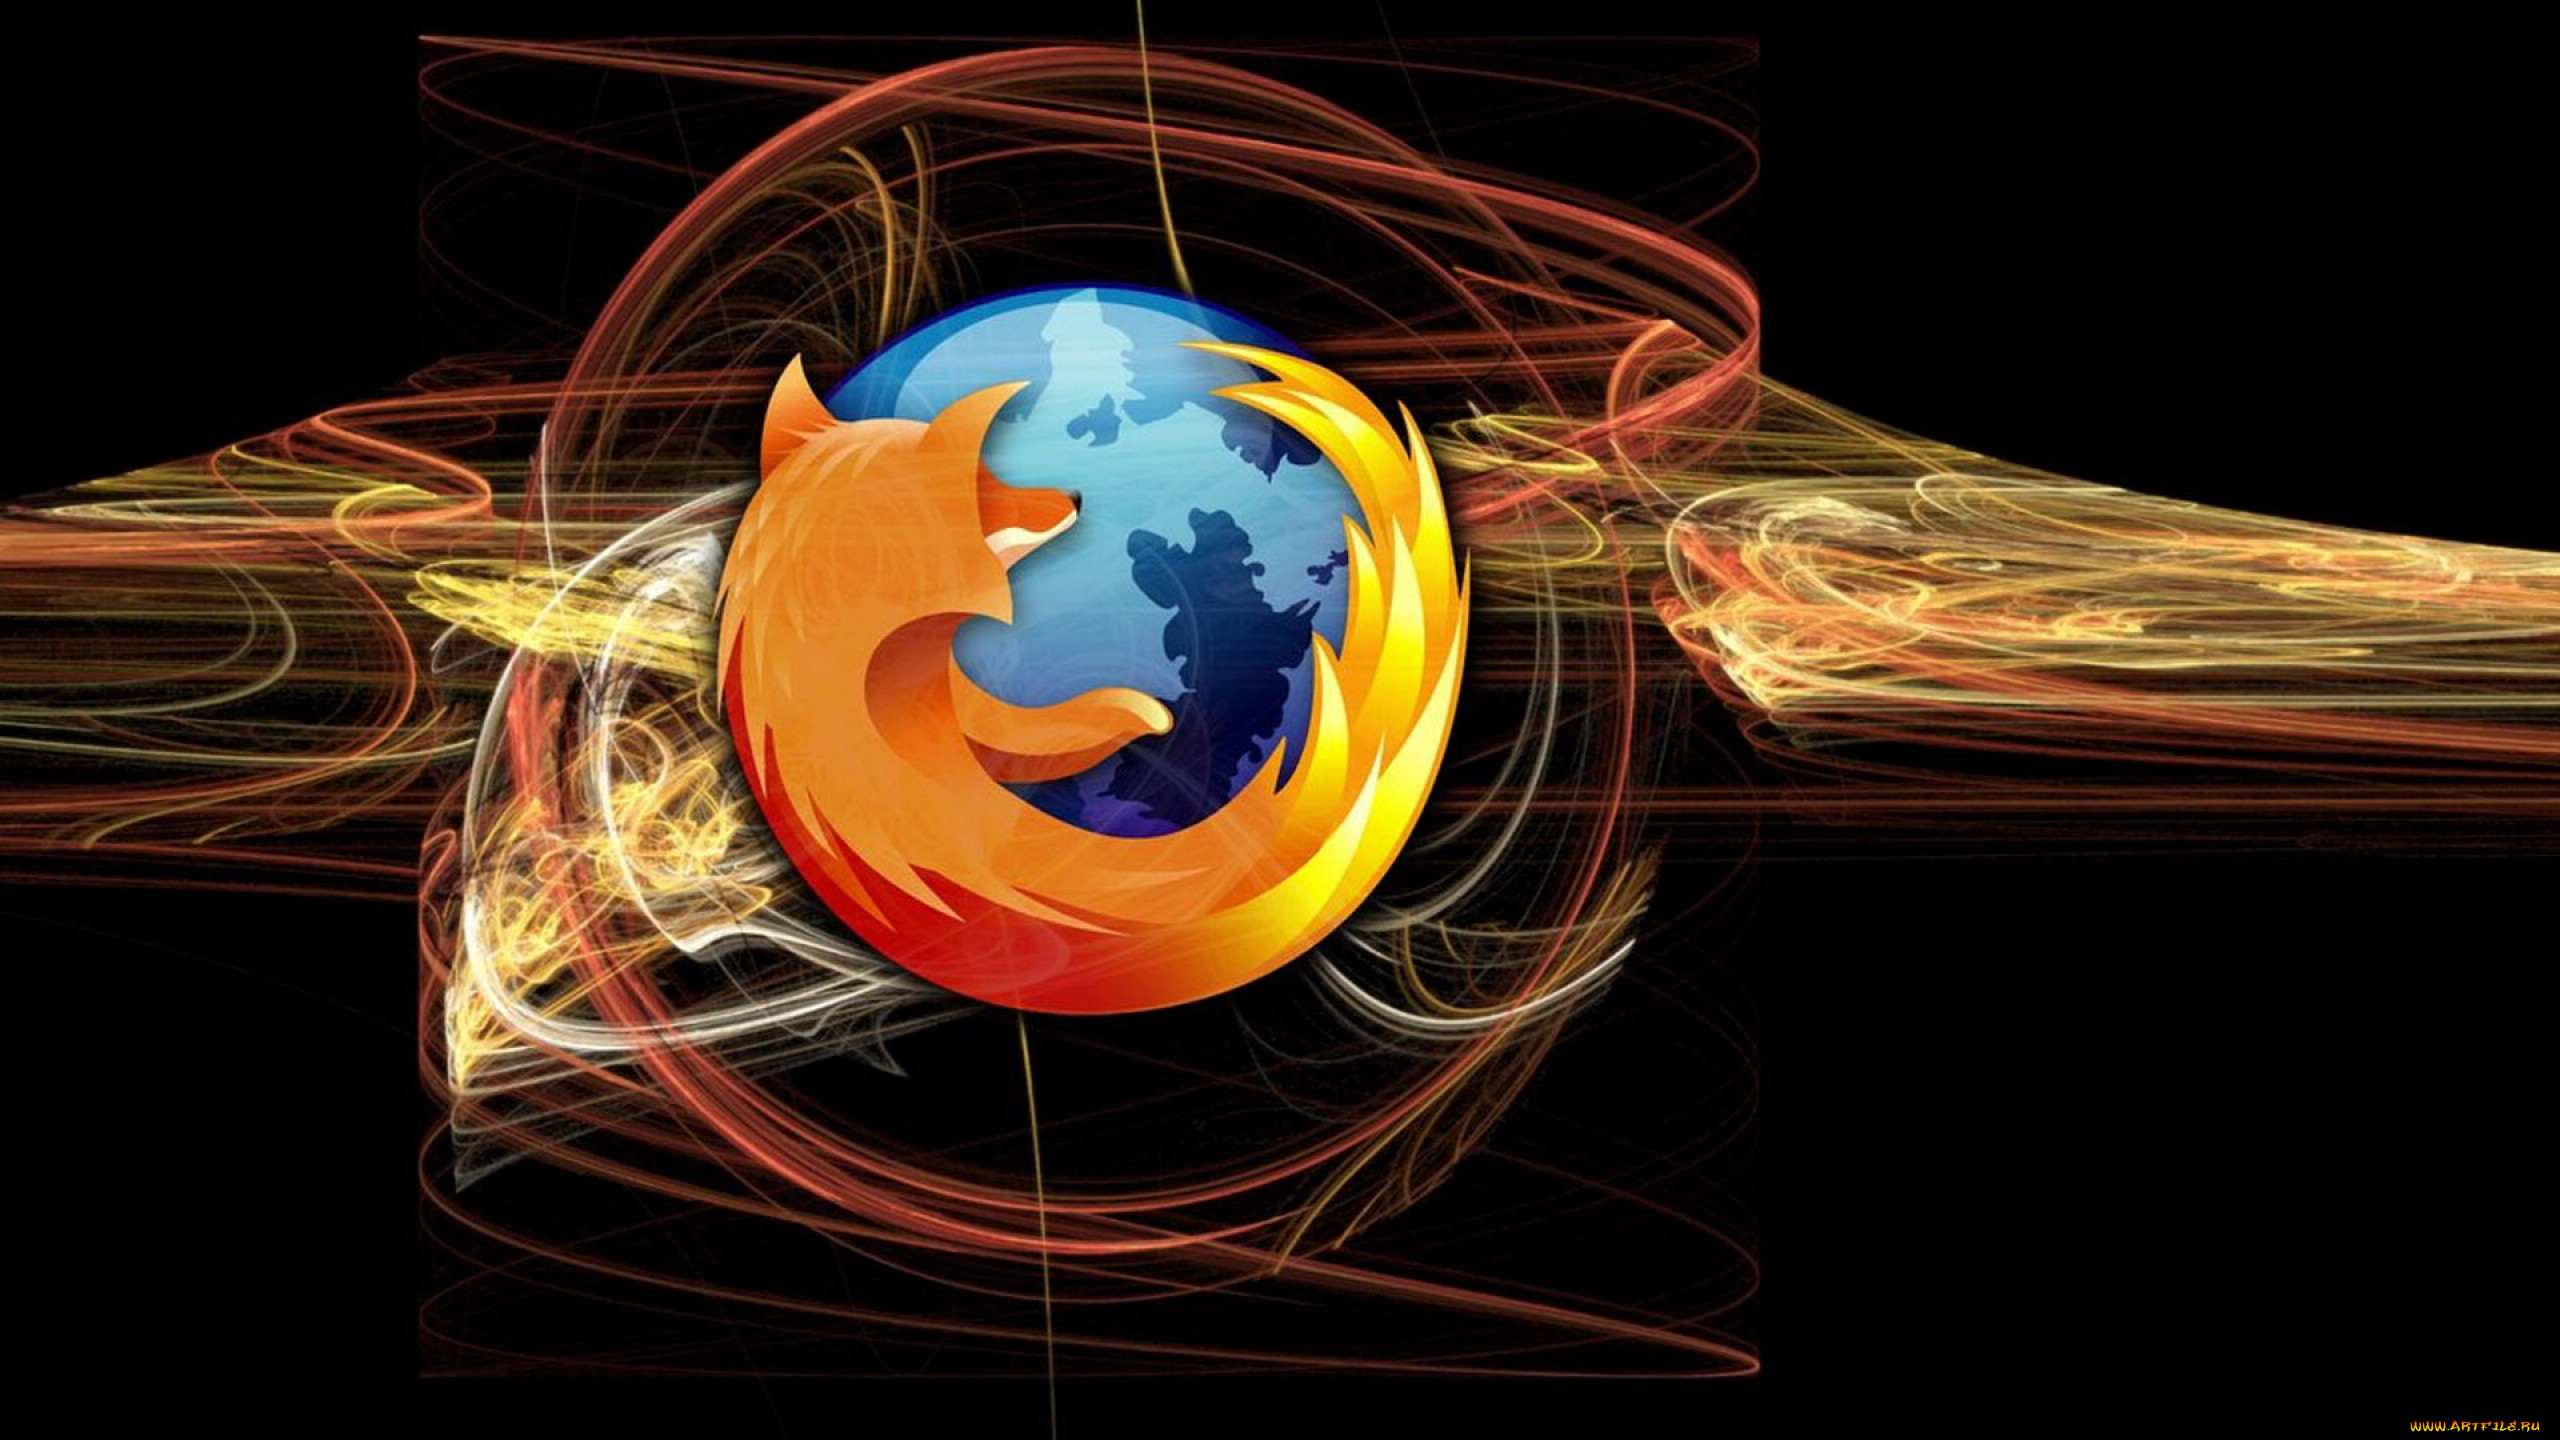 Mozilla Firefox фото